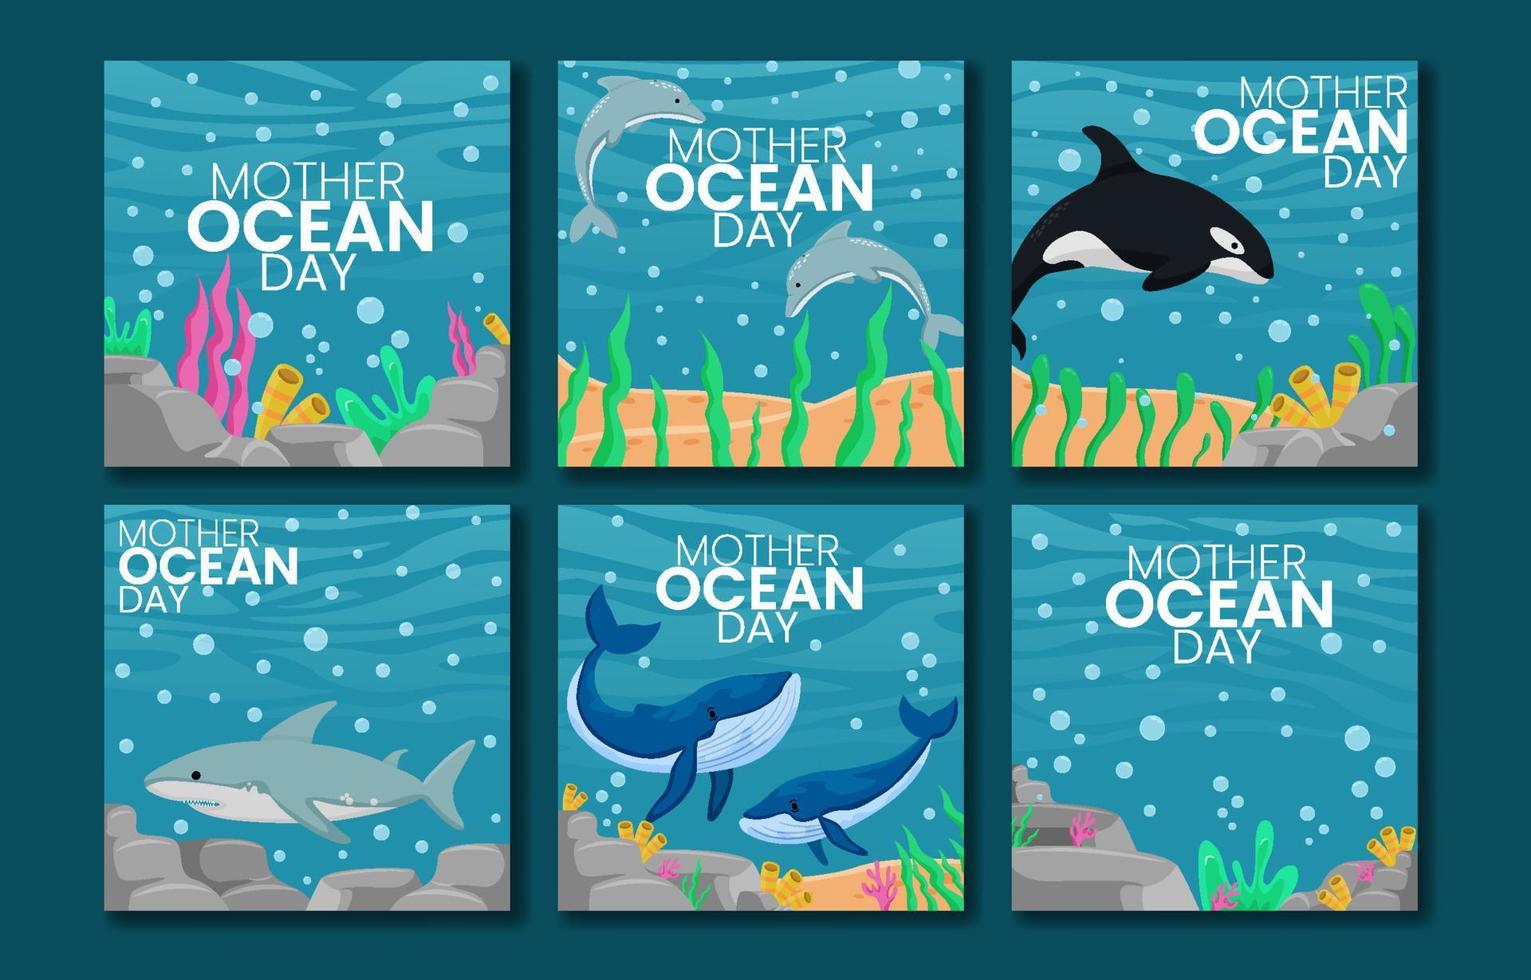 Mother Ocean Day Social Media Post vector